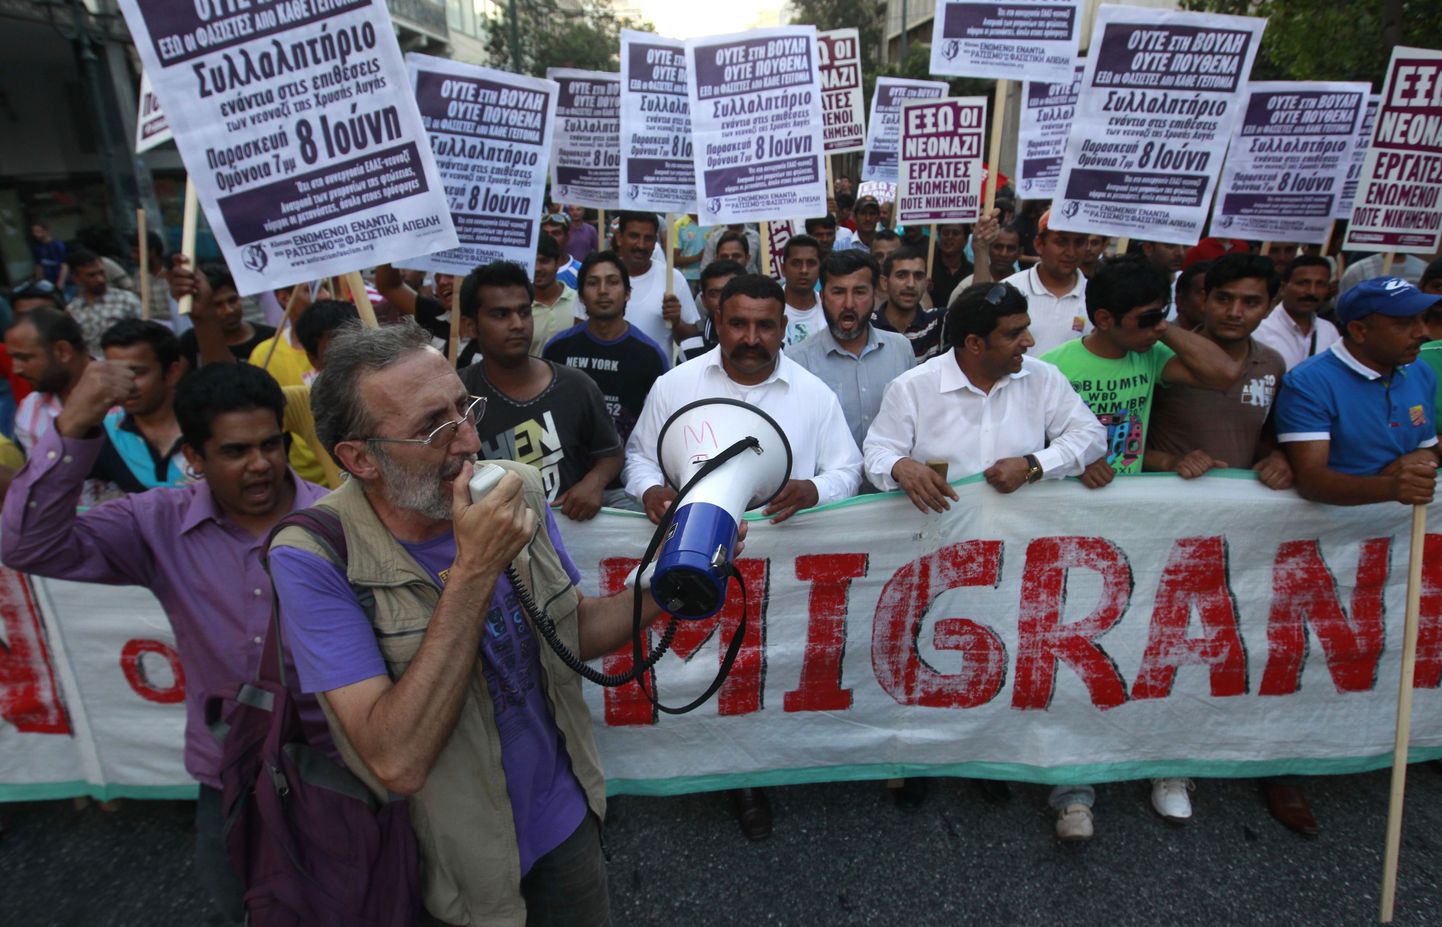 Kreeka sisserändajad ja võõrtöölised protestimas nende vastu suunatud vägivalla vastu